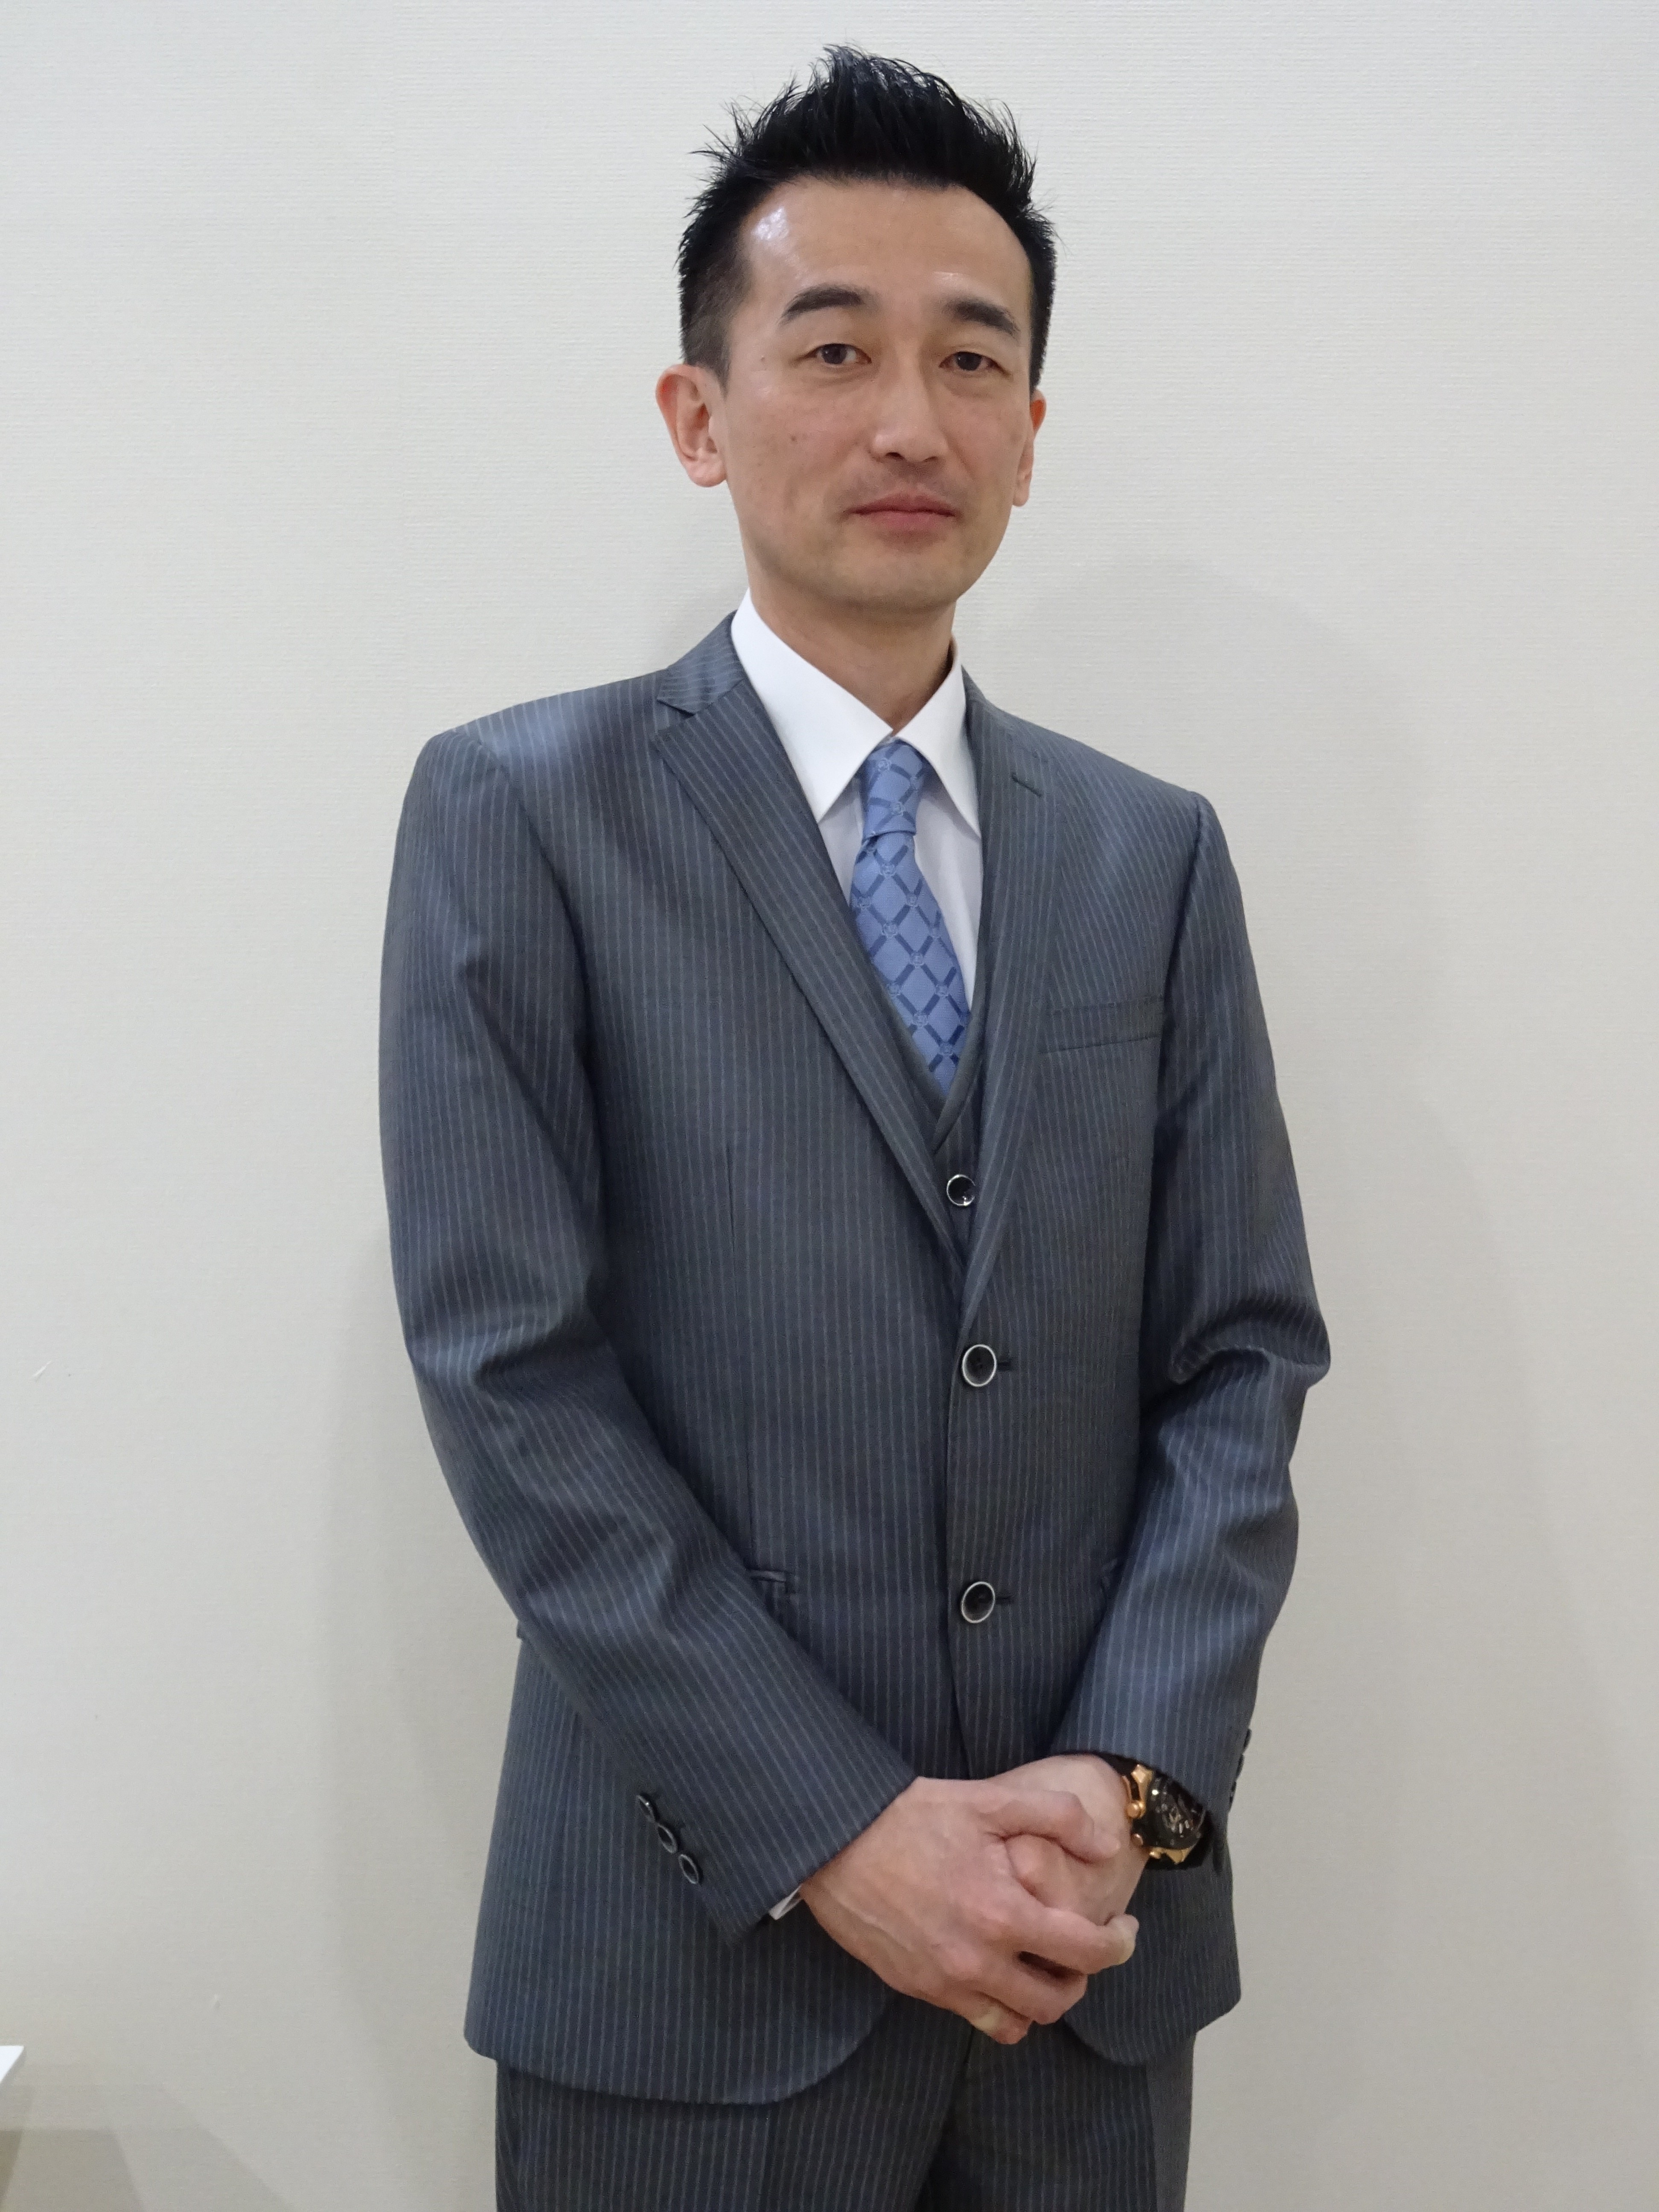 Yasuhiro Yamamoto, president and CEO of Eneco